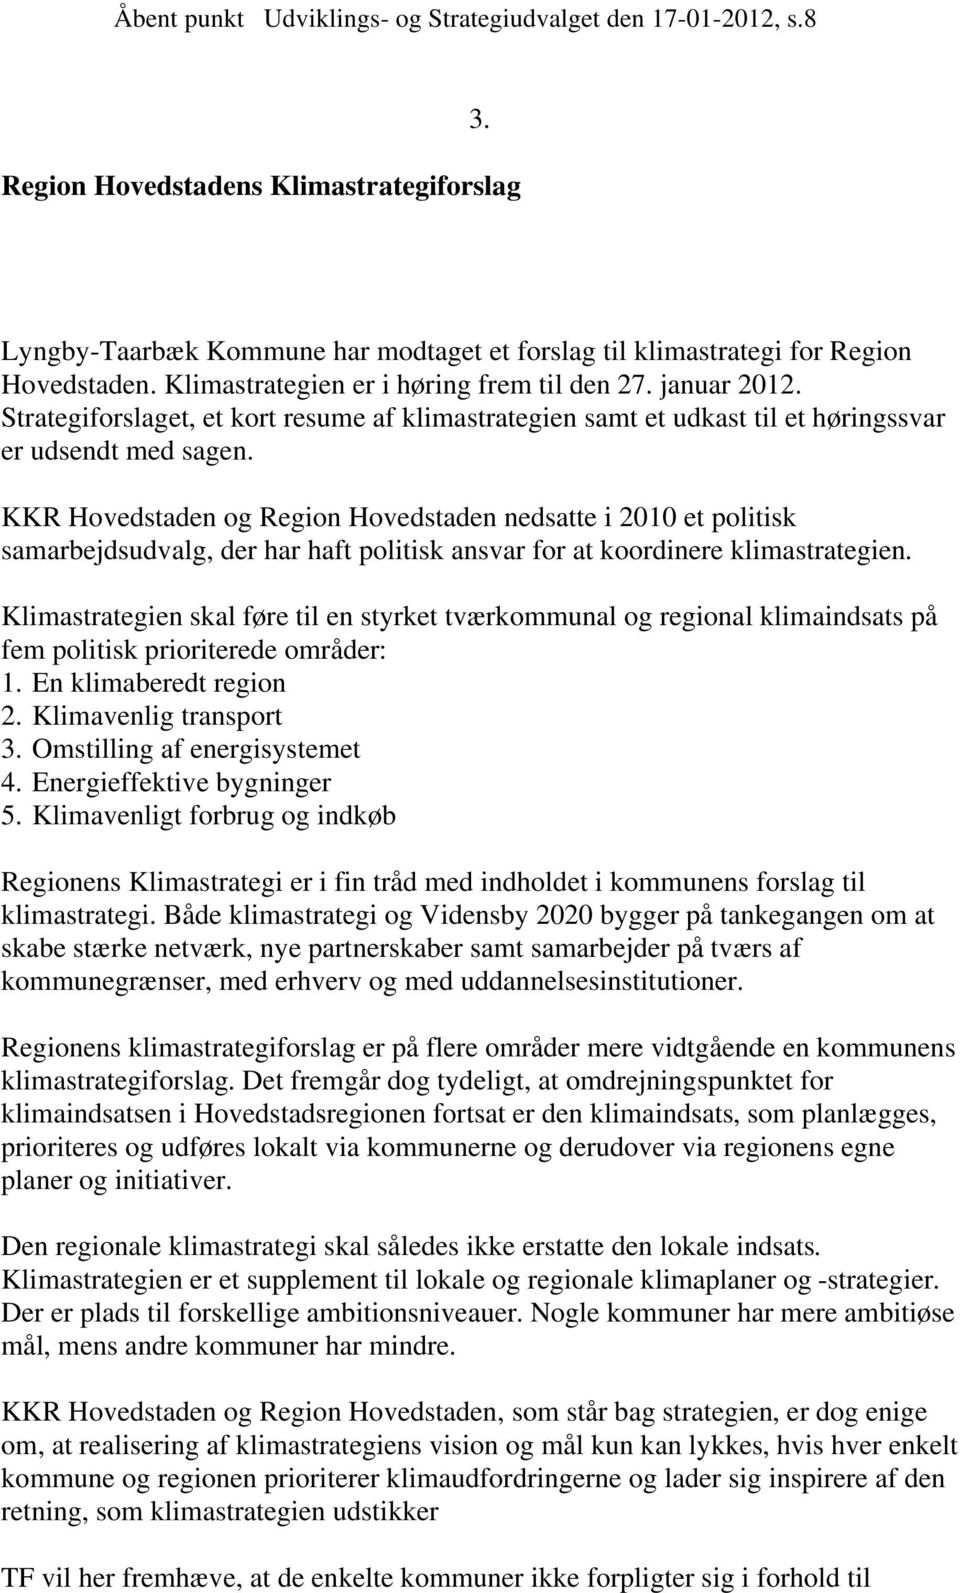 KKR Hovedstaden og Region Hovedstaden nedsatte i 2010 et politisk samarbejdsudvalg, der har haft politisk ansvar for at koordinere klimastrategien.